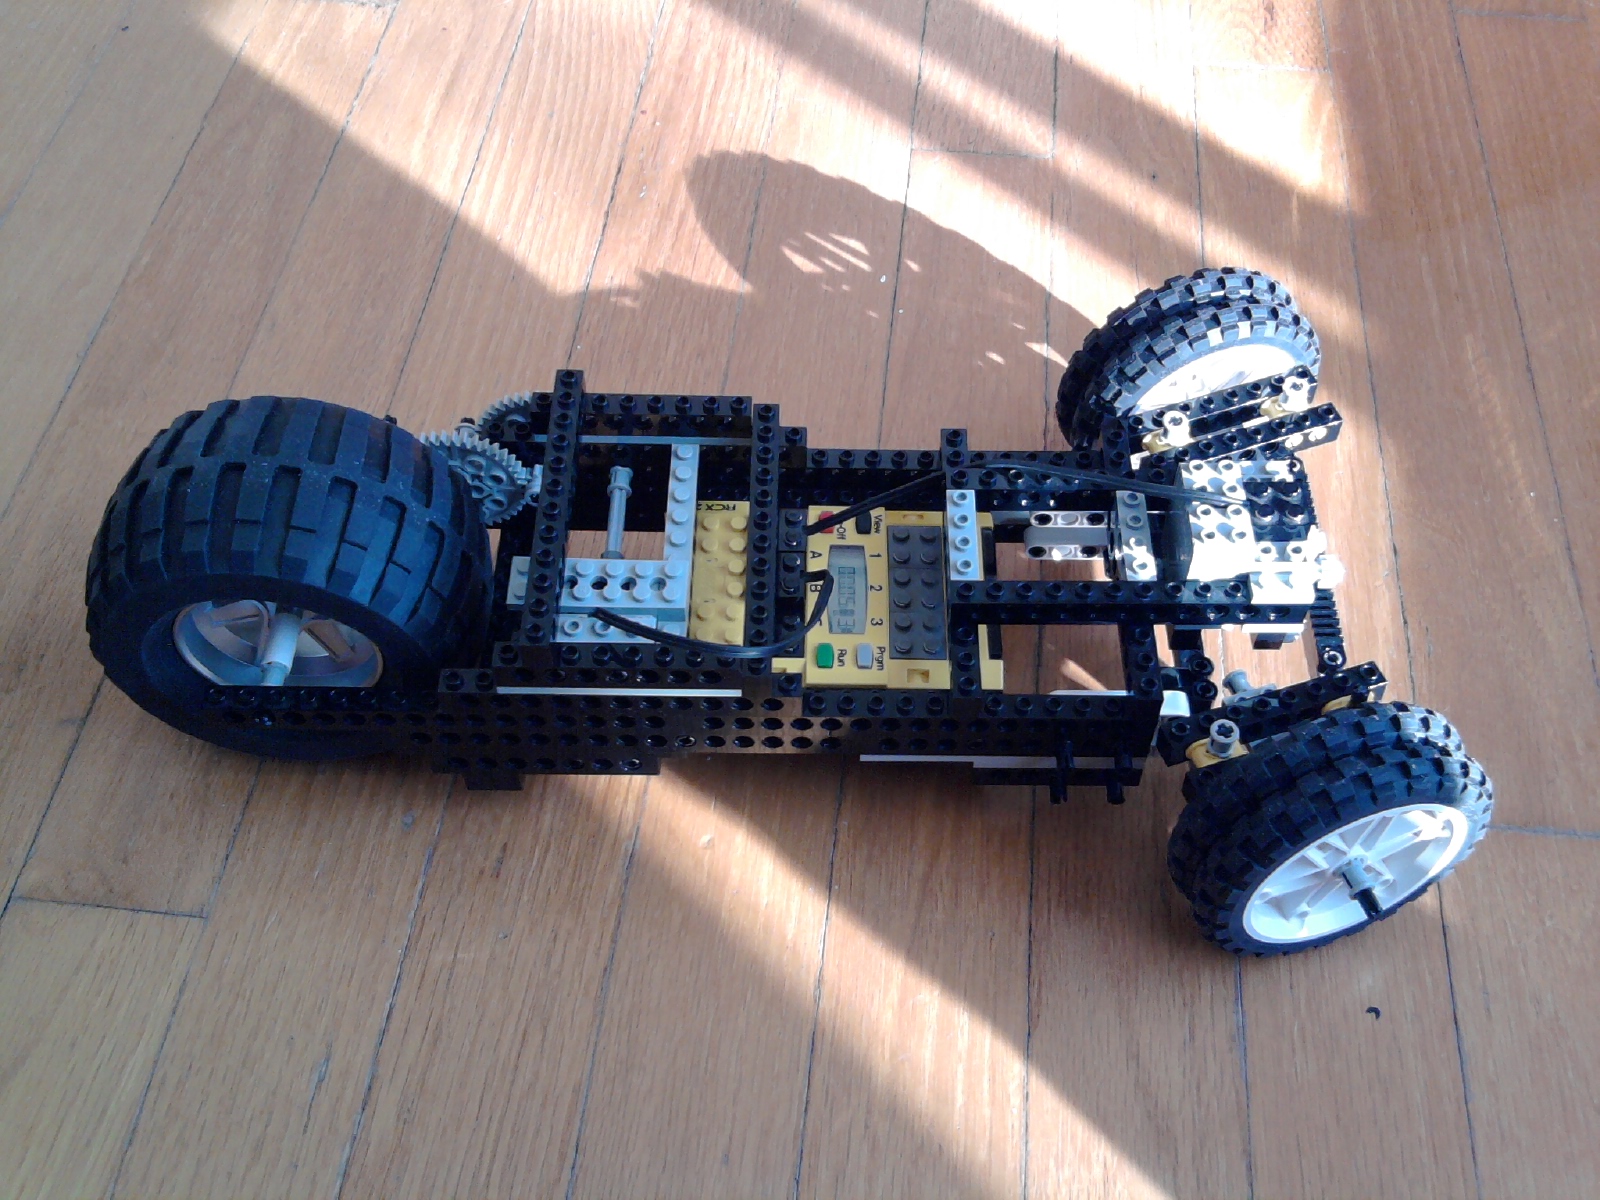 Phillipe Lego RC car